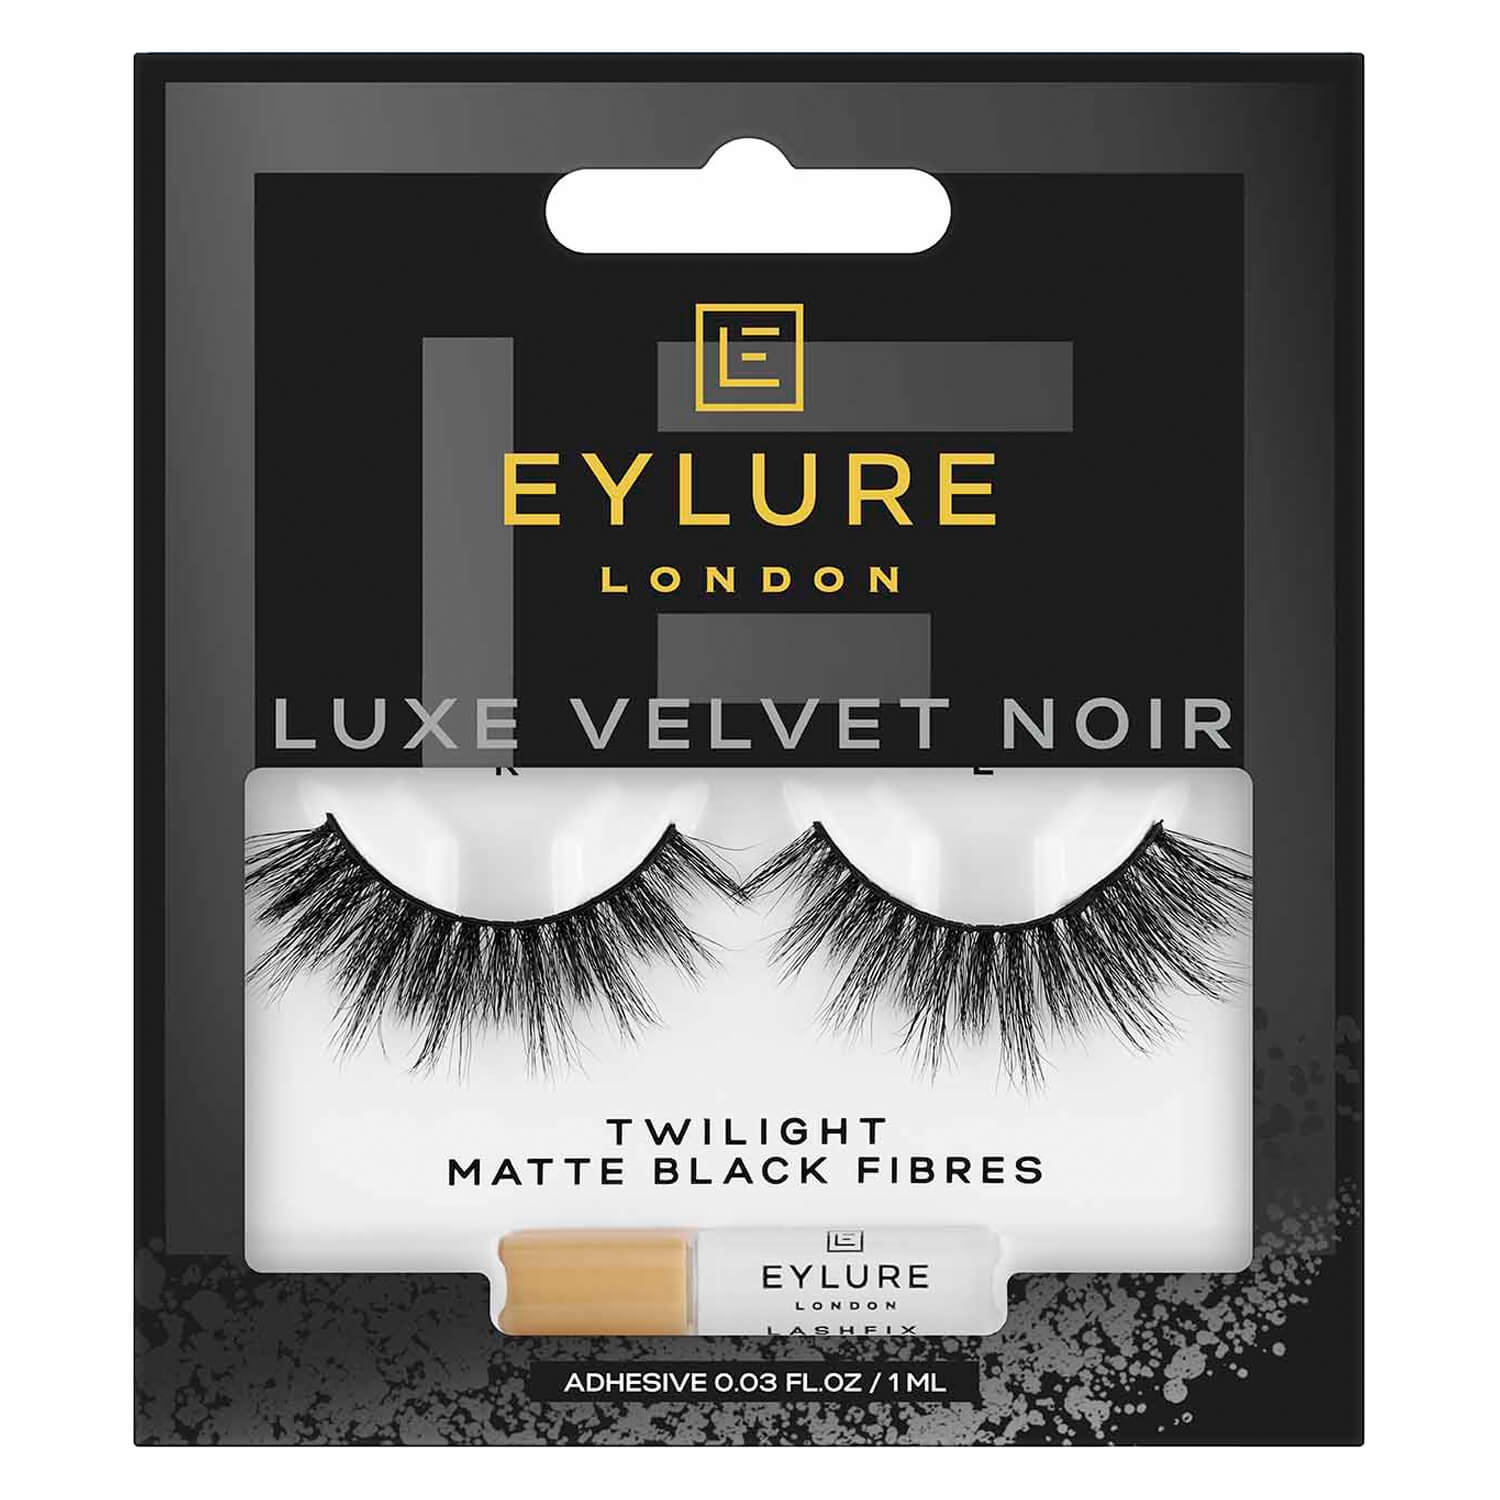 Produktbild von EYLURE - Luxe Velvet Noir Twilight